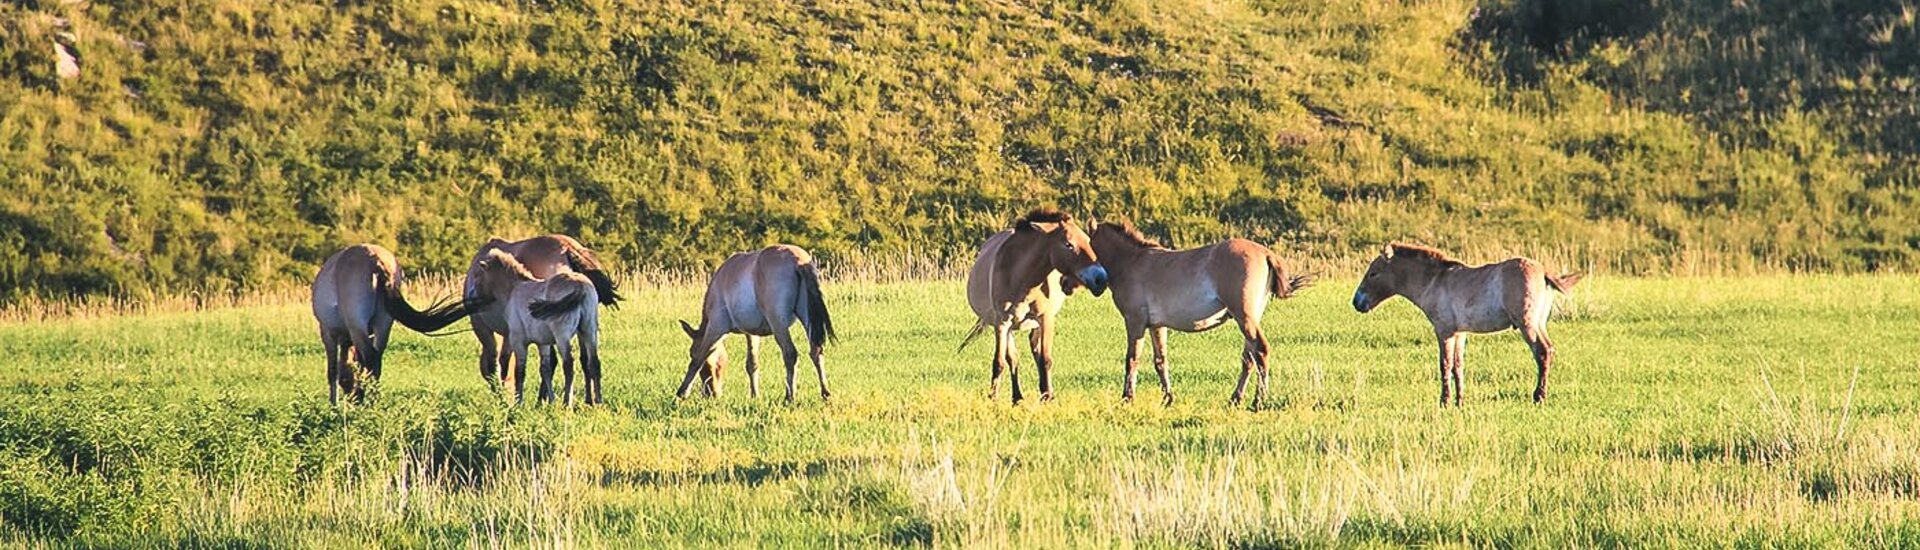 Pferde im Nationalpark Chustain Nuruu, Mongolei